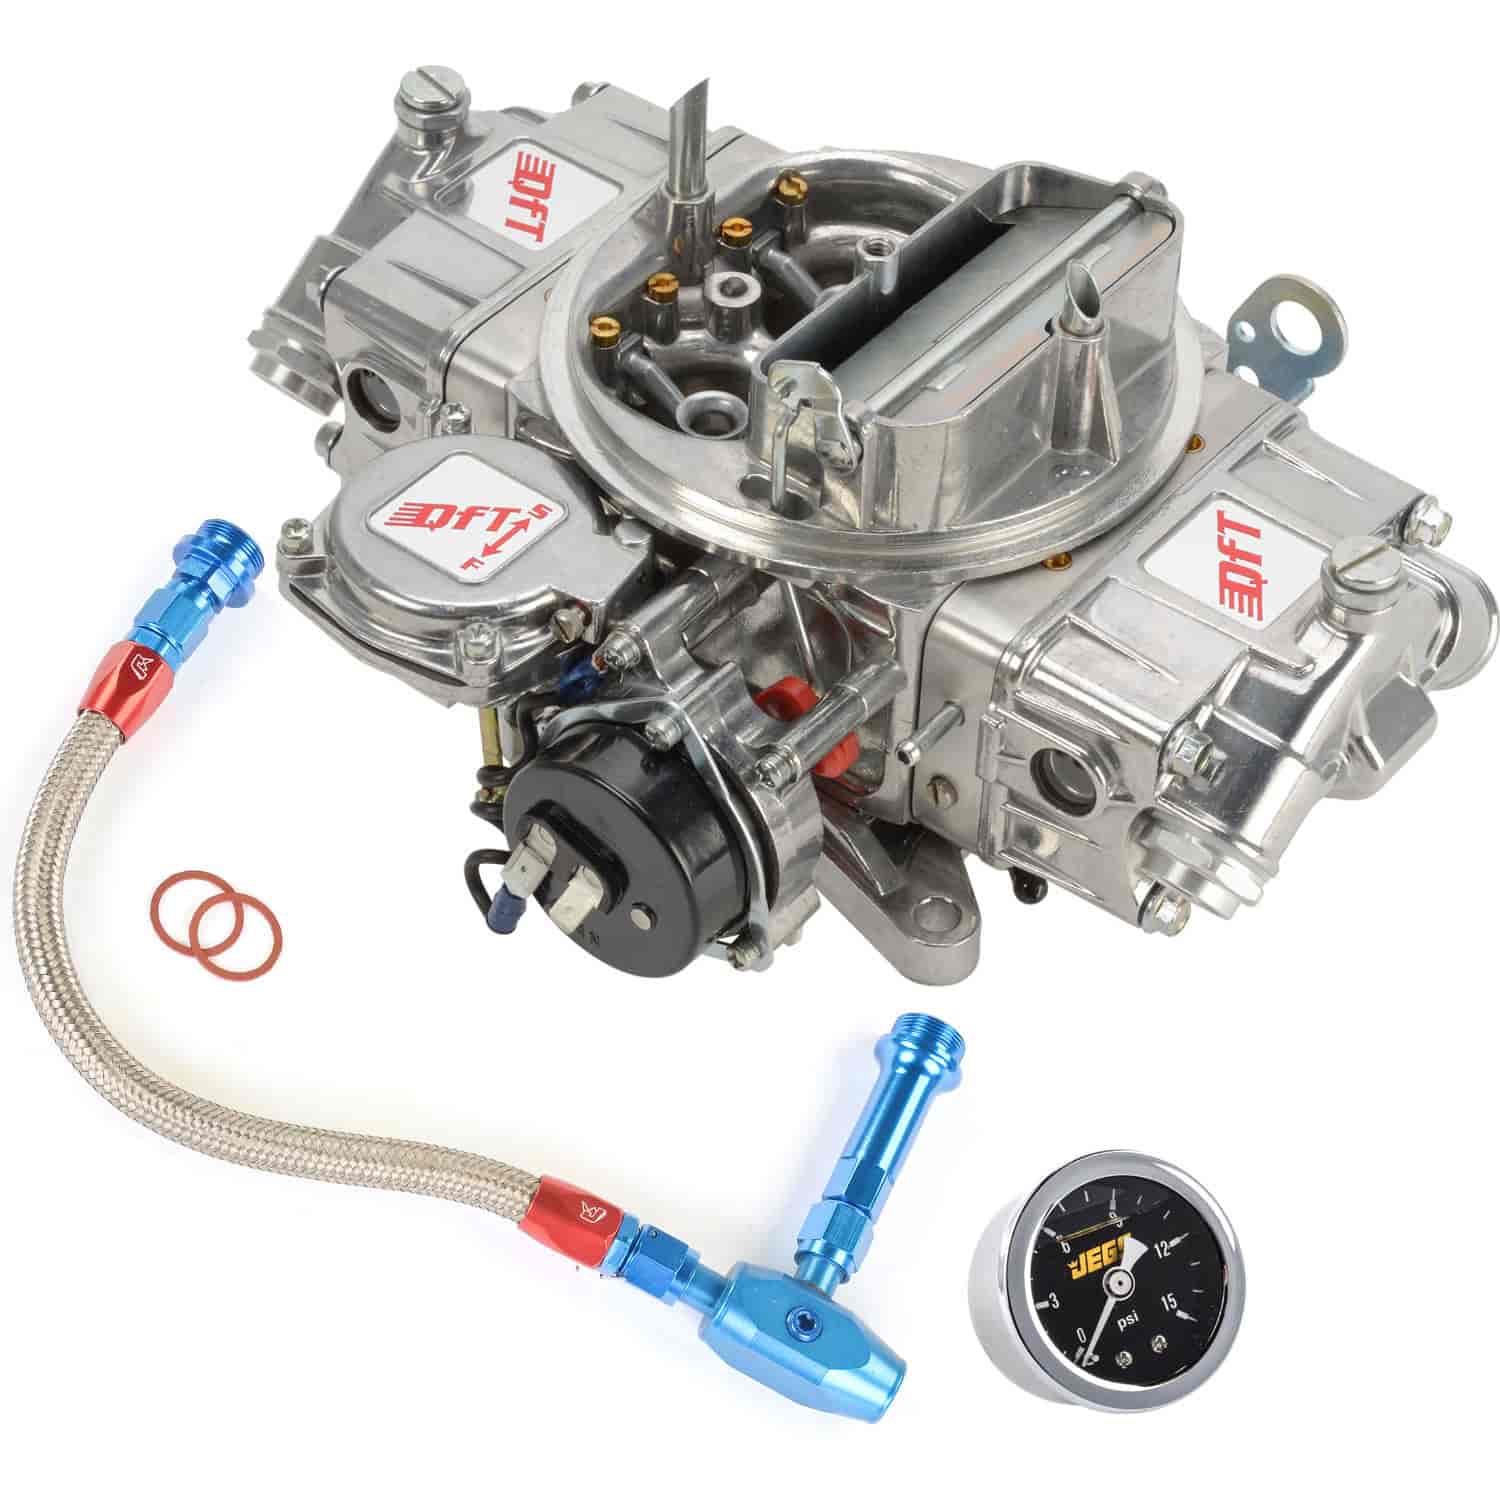 Hot Rod Carburetor Kit Includes: 735 cfm Carburetor